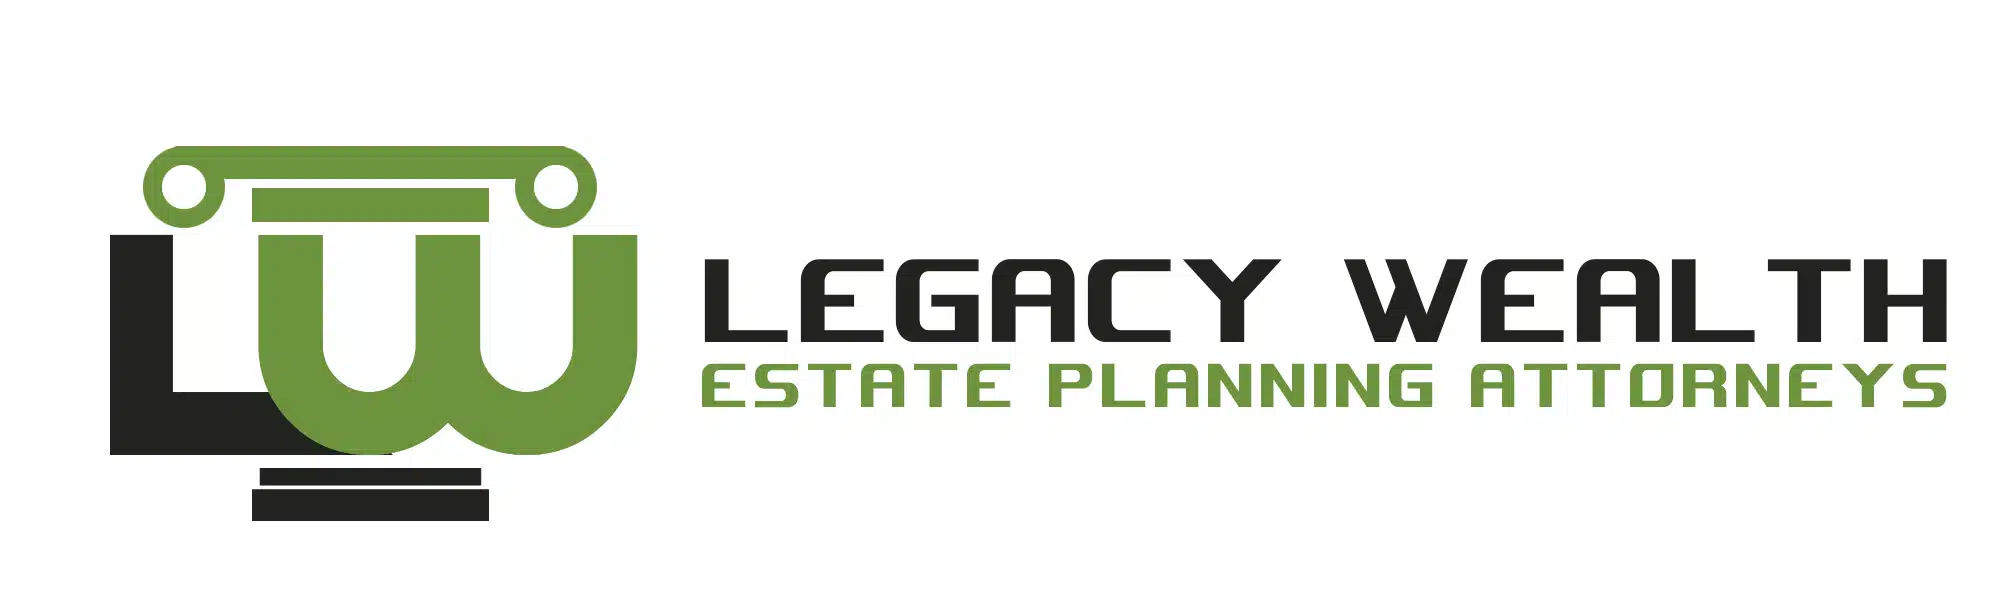 Legacy-Wealth-5.webp